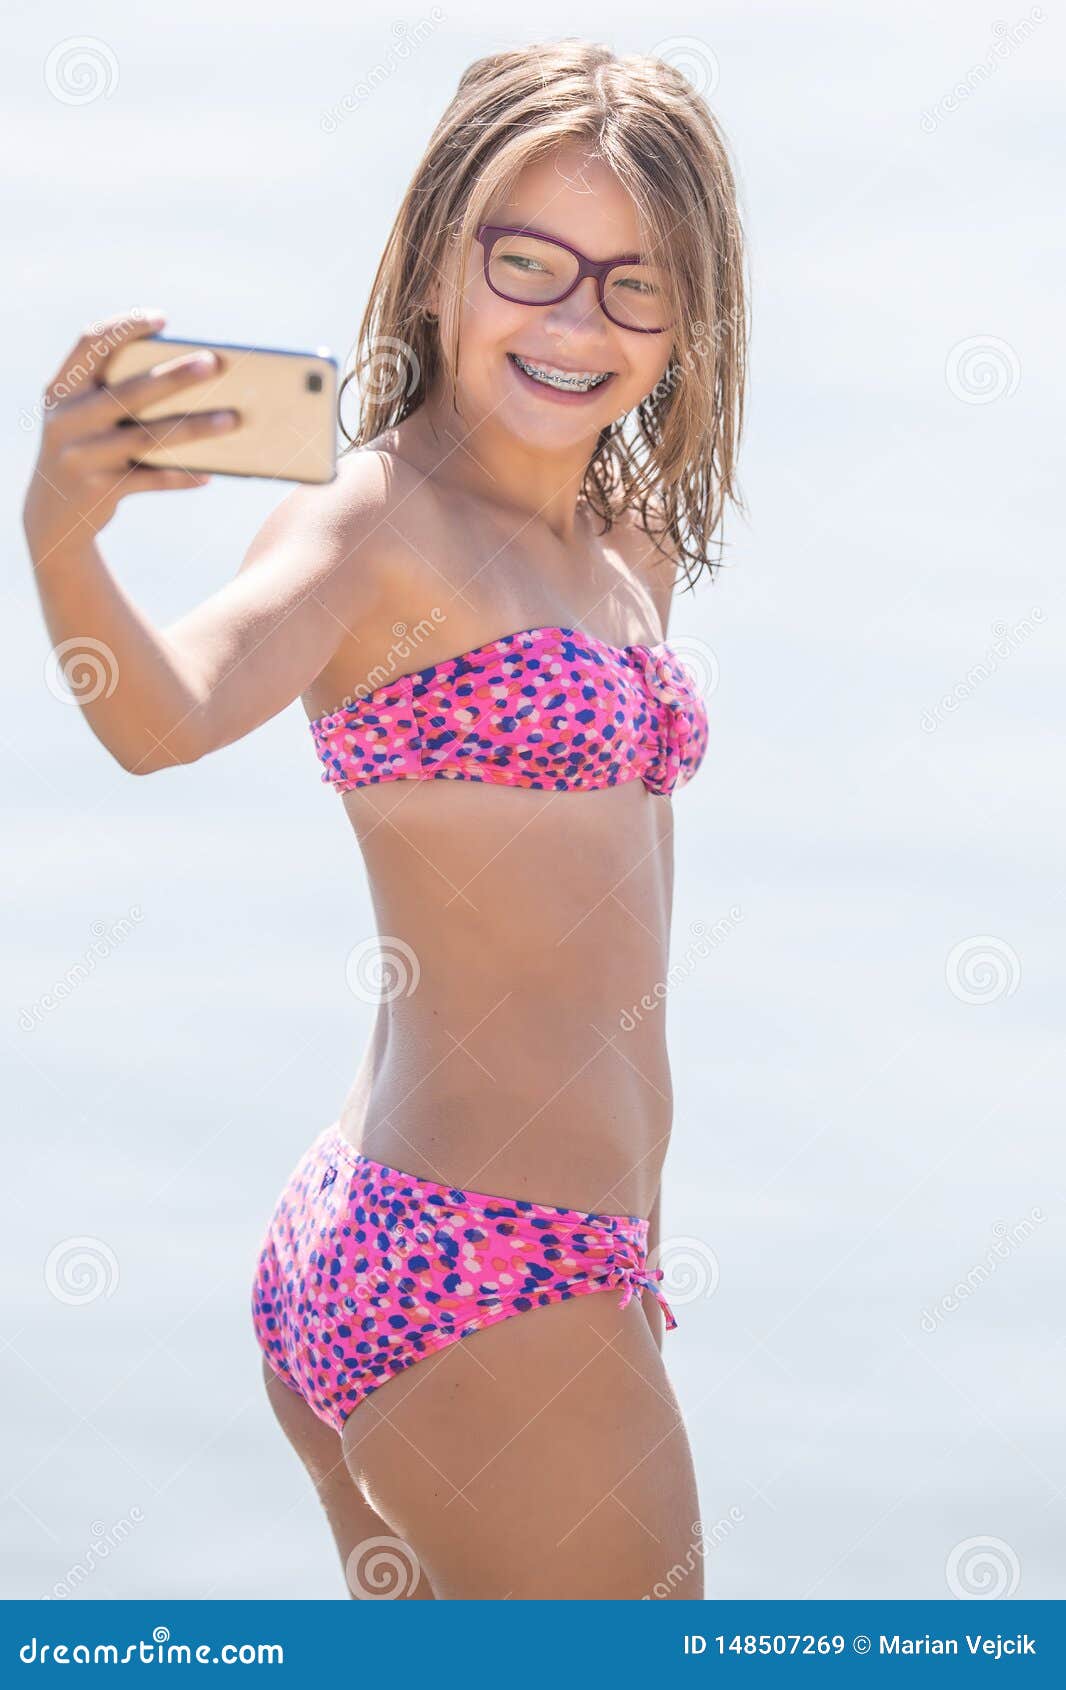 Tiny teen selfie